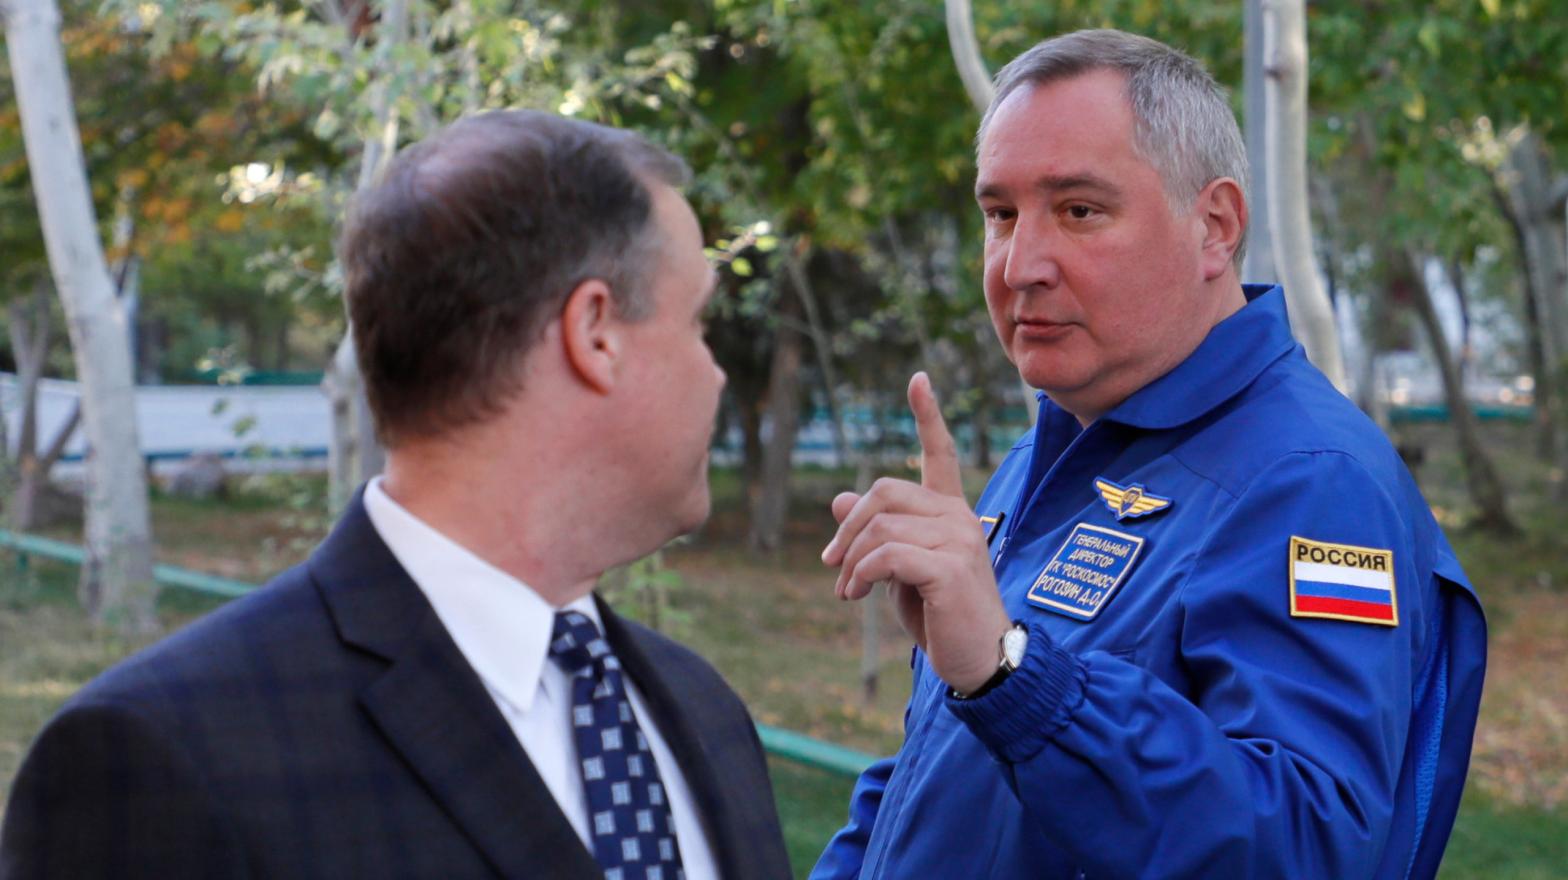 Dmitry Rogozin meeting with NASA administrator Jim Bridenstine at Baikonur cosmodrone in Kazakhstan in 2018. (Photo: Yuri Kotchetkov/AFP, Getty Images)